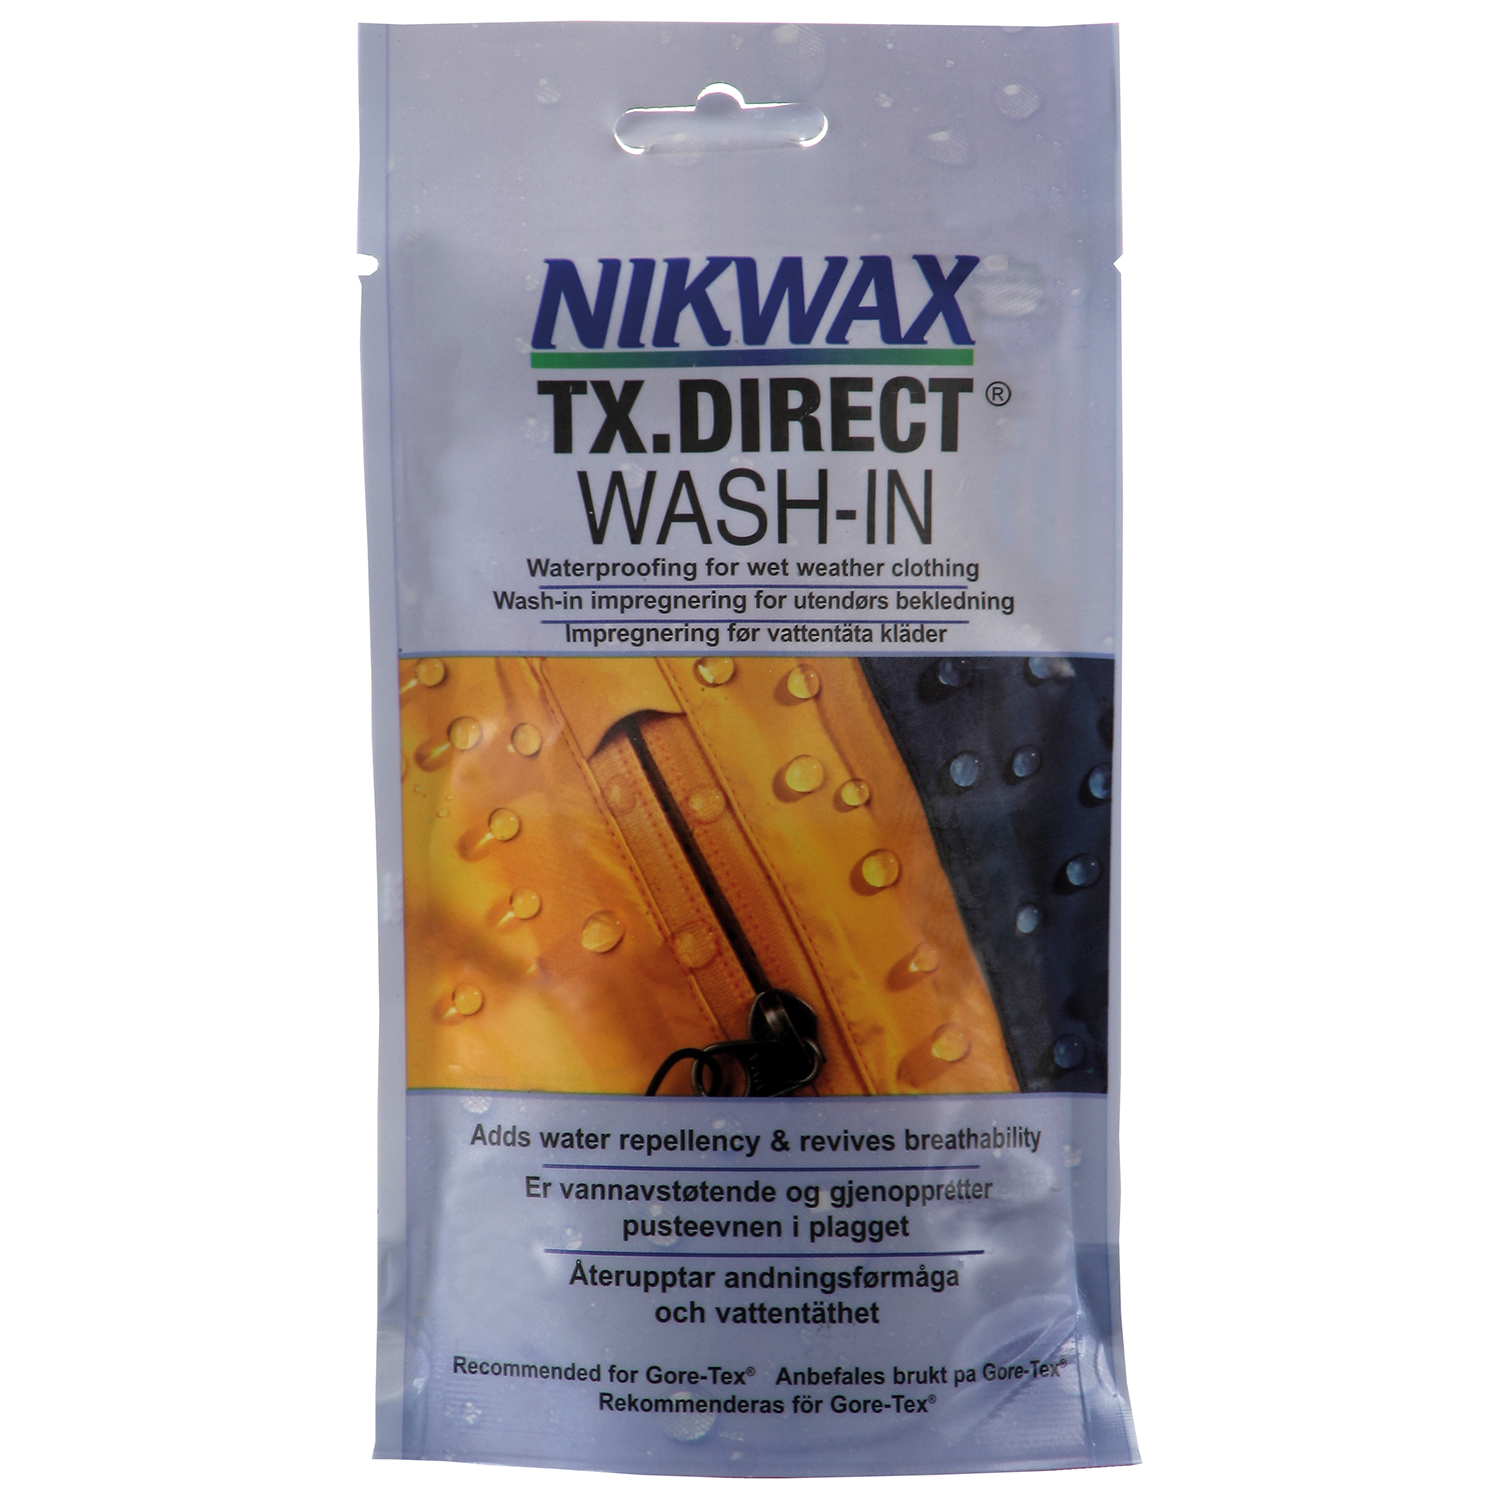 NIKWAX TX DIRECT WASH-IN SINGLE DOSE